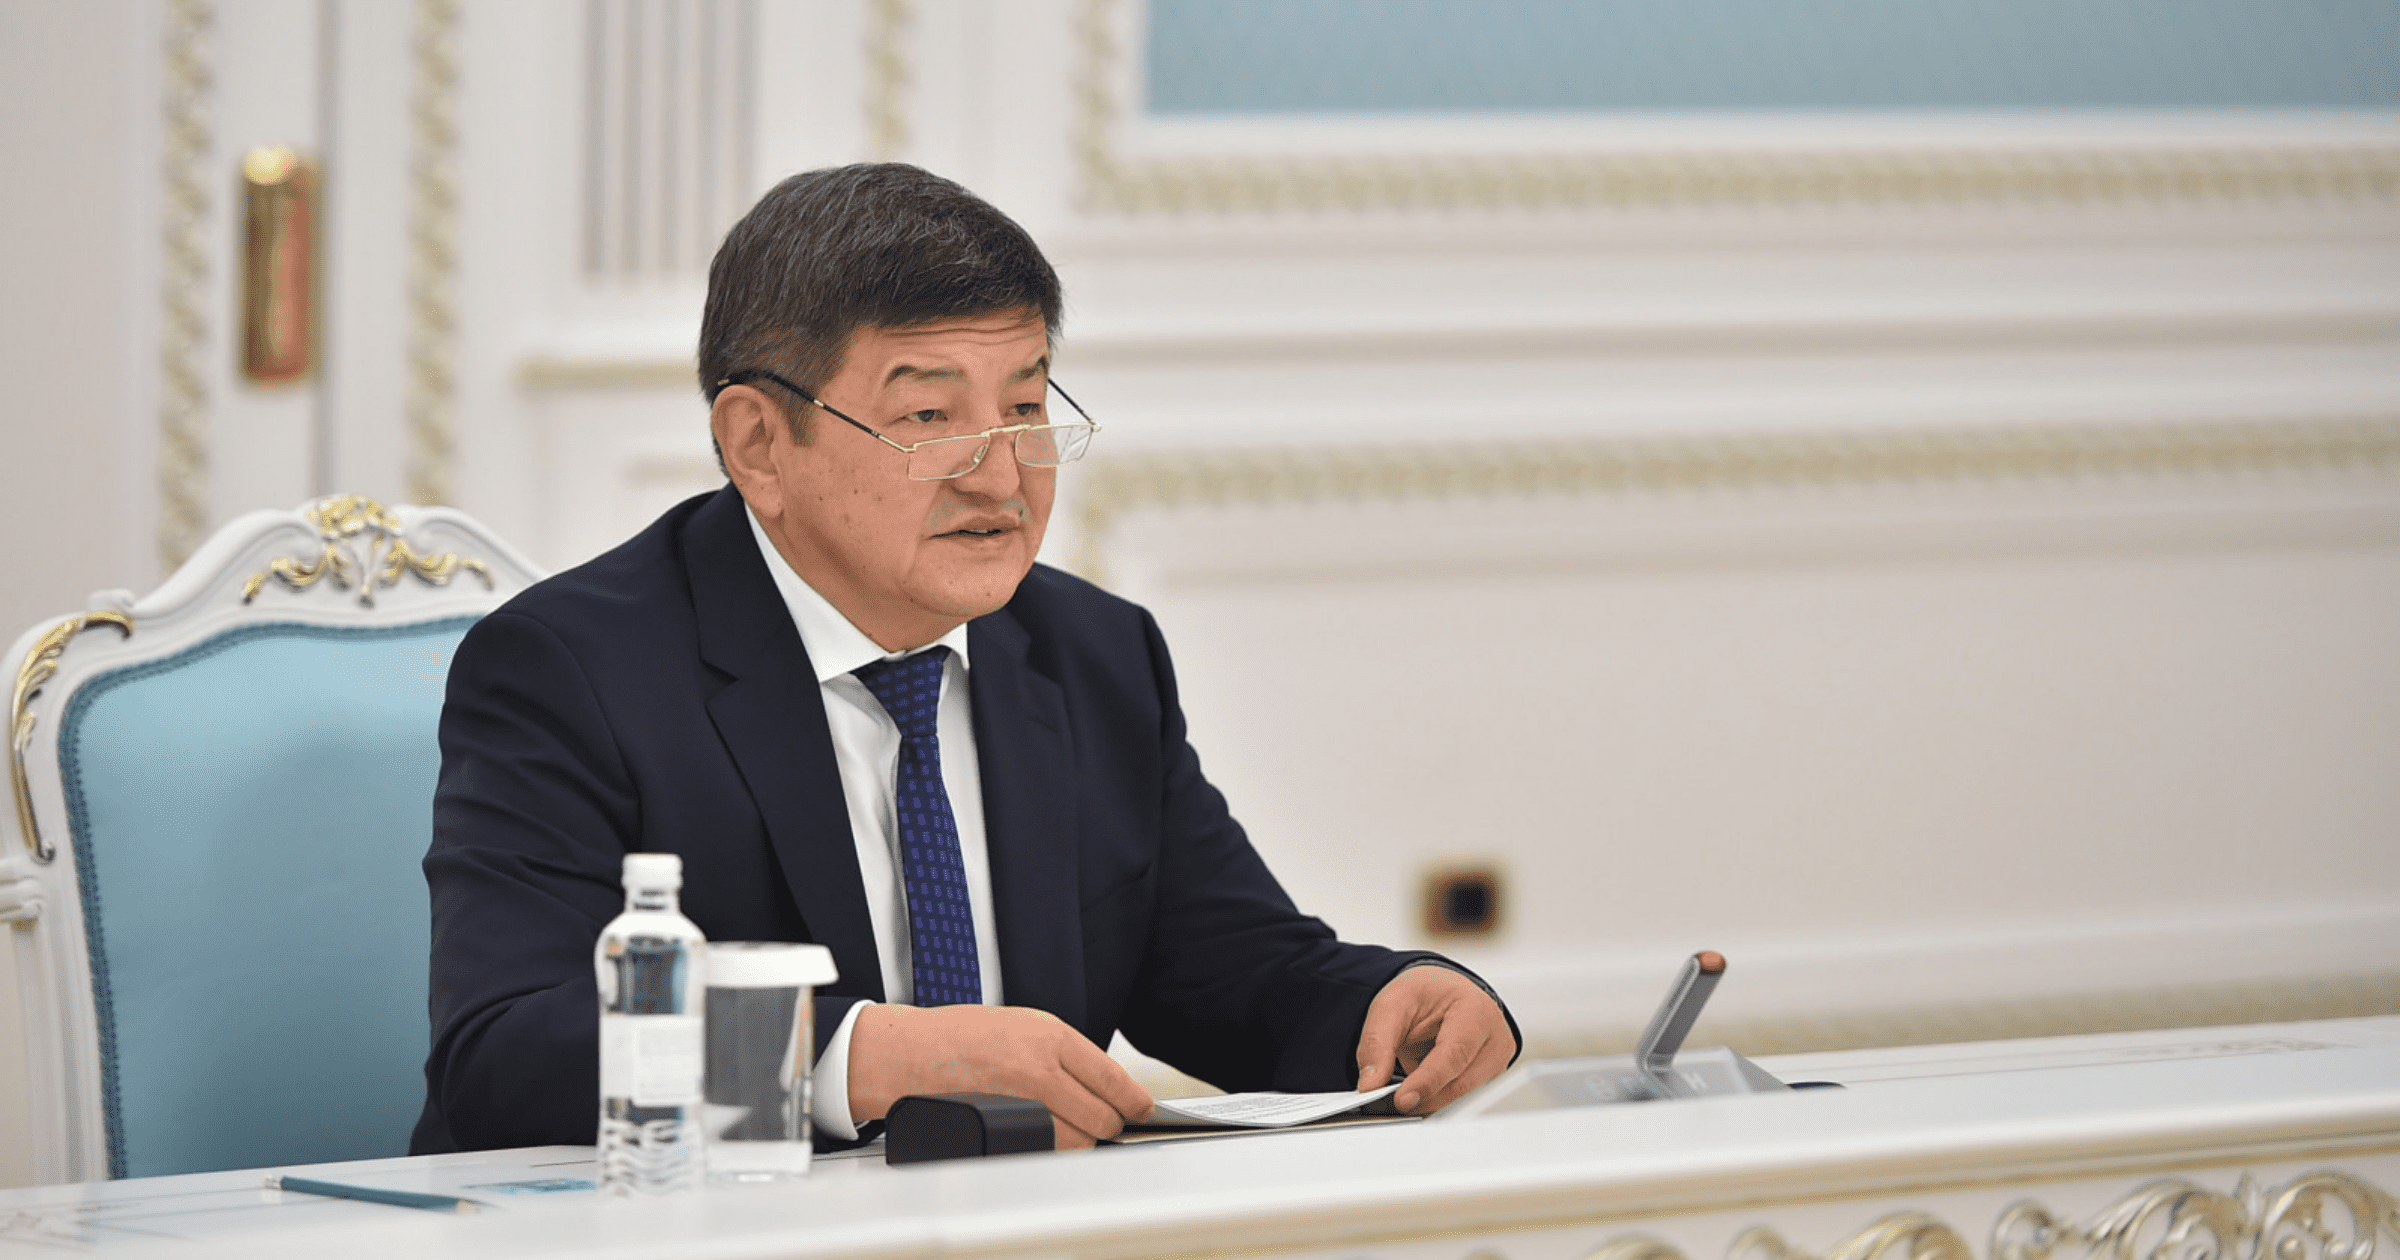 Акылбек Жапаров призвал ОДКБ принять необходимые меры для бизнеса и межбанковских связей